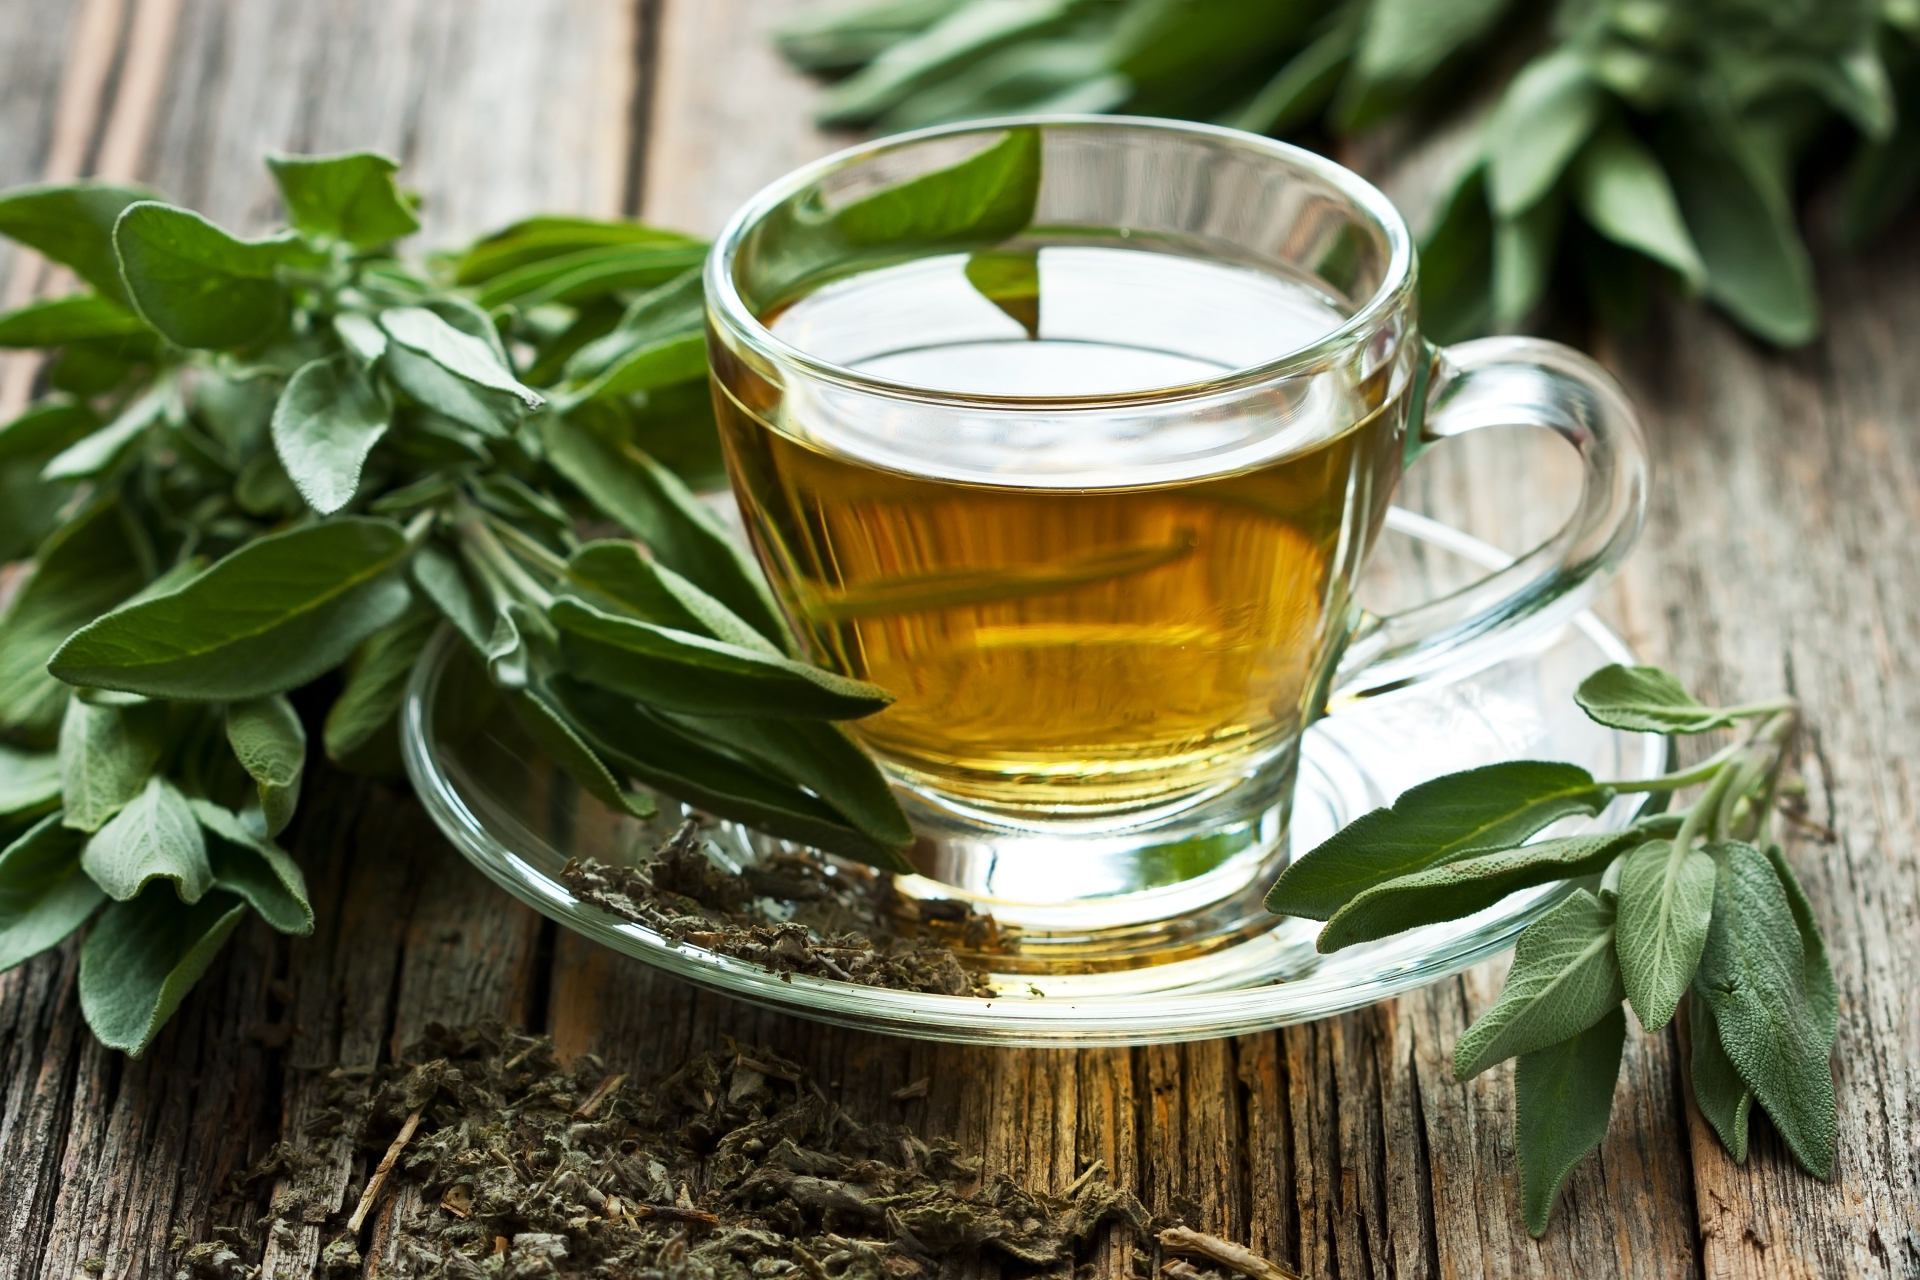 Для того, чтобы сделать чай из шалфея, можно купить готовые пакетики с измельченным растением в аптеке или приготовить его самостоятельно